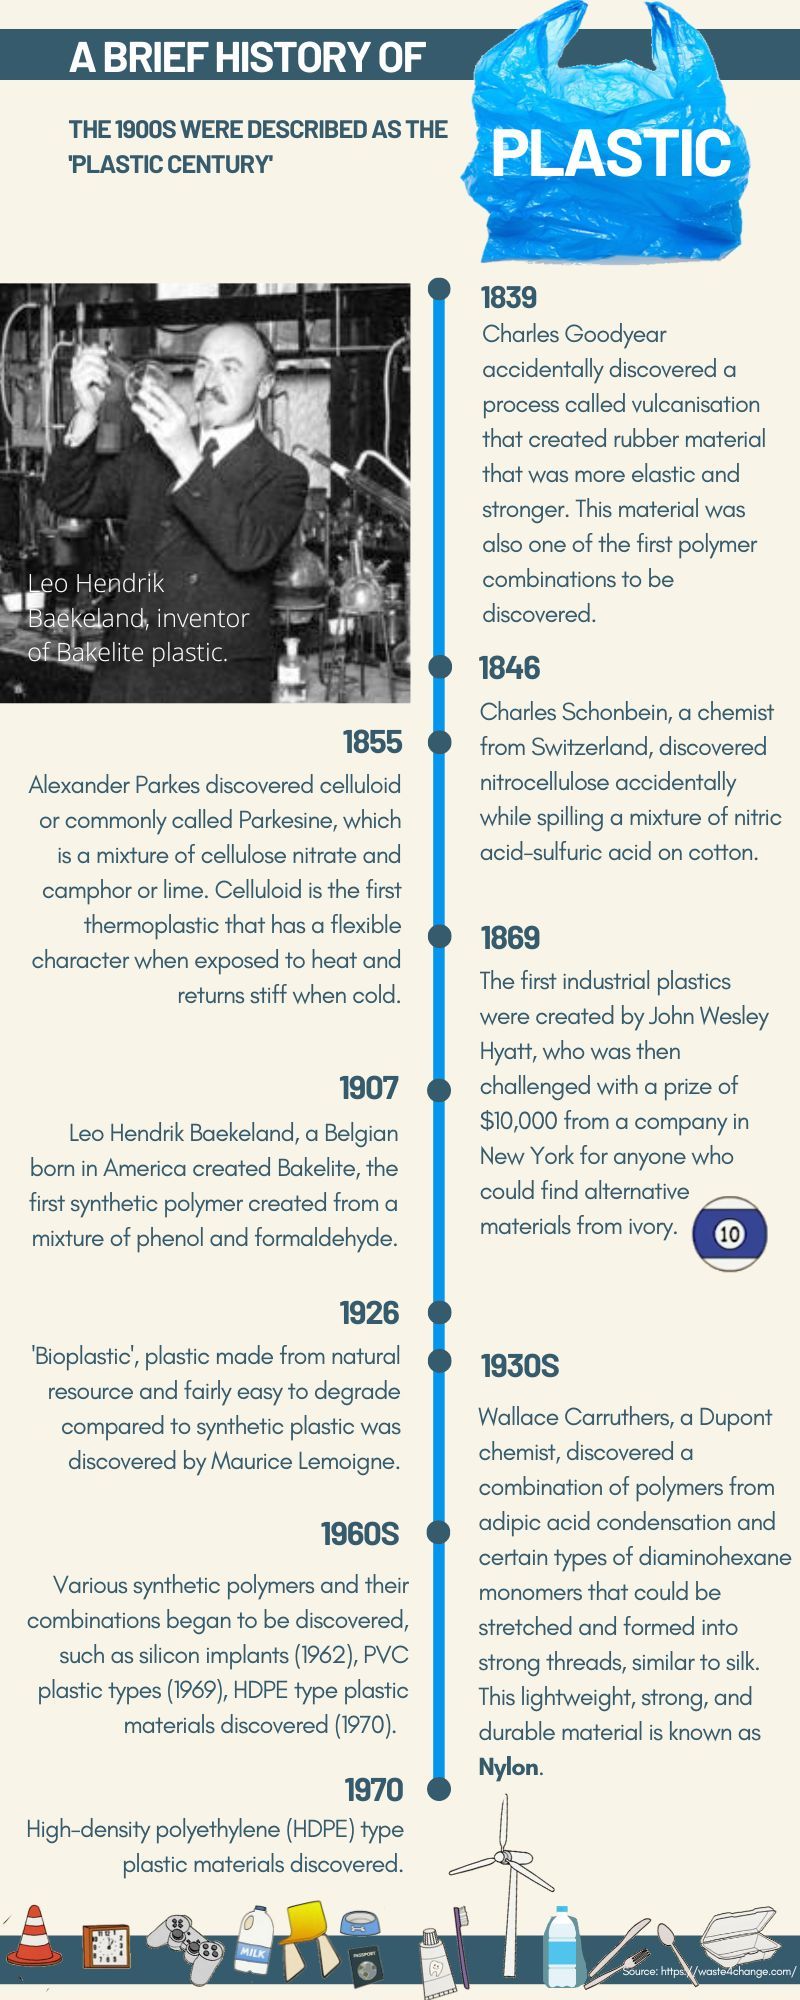 PLASTIC HISTORY TIMELINE